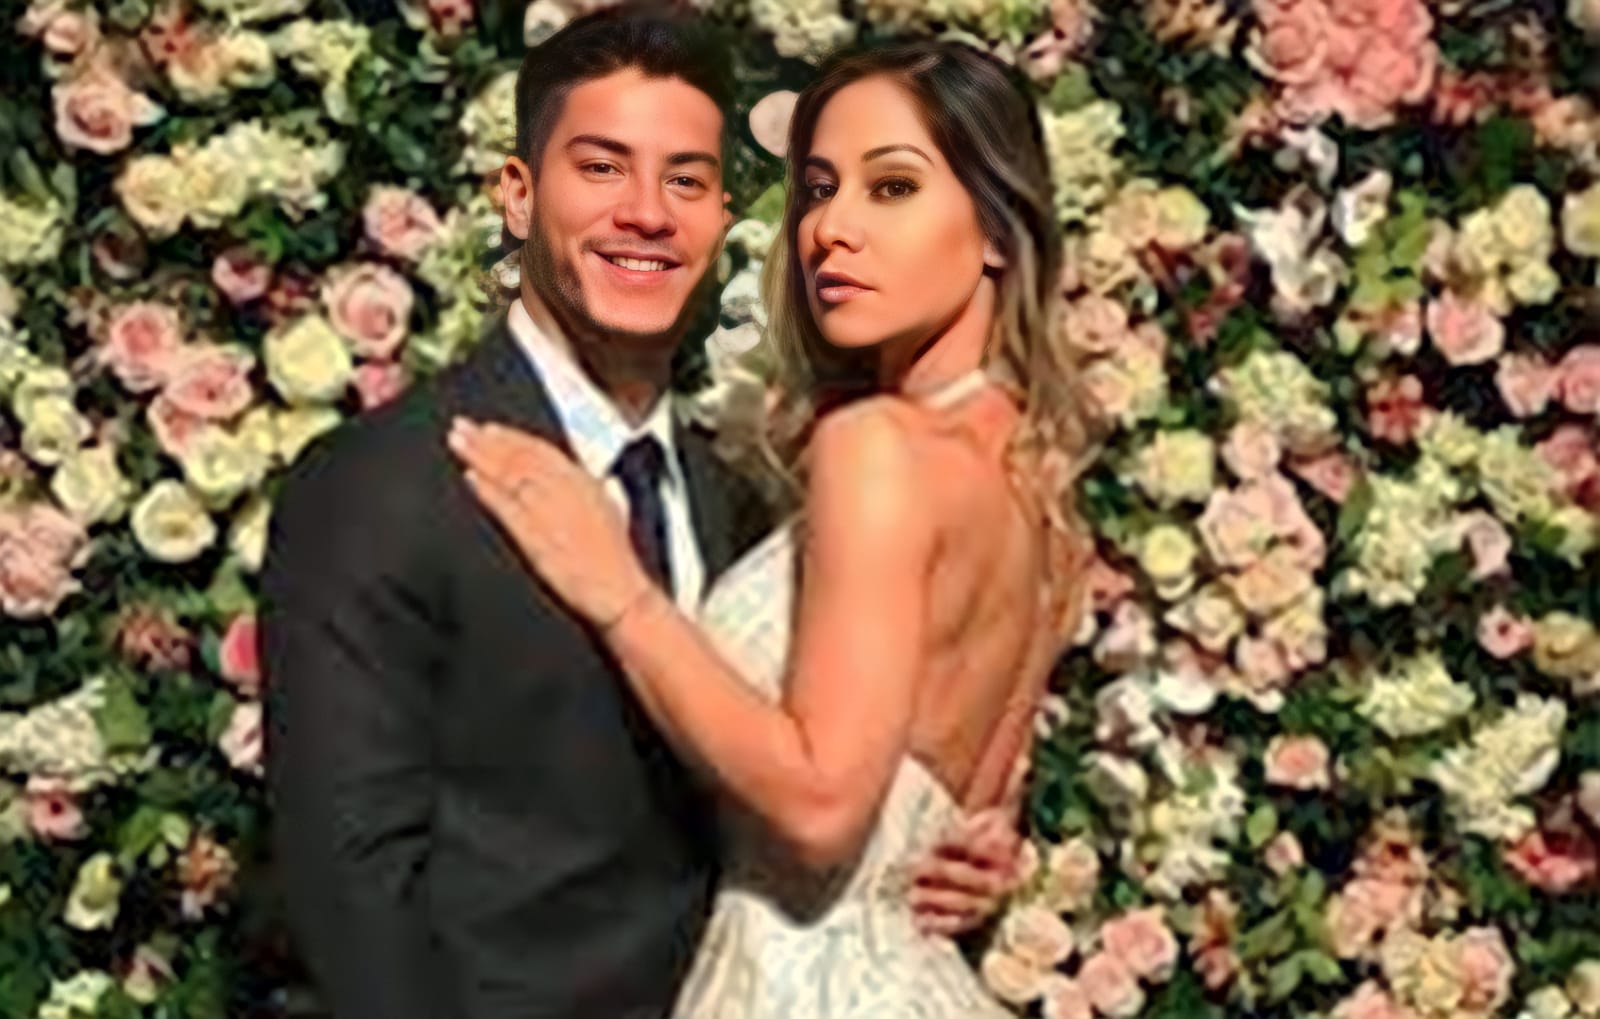 Foto do casamento de Fábio Porchat, com o look inaceitável da convidada, Maíra Cardi